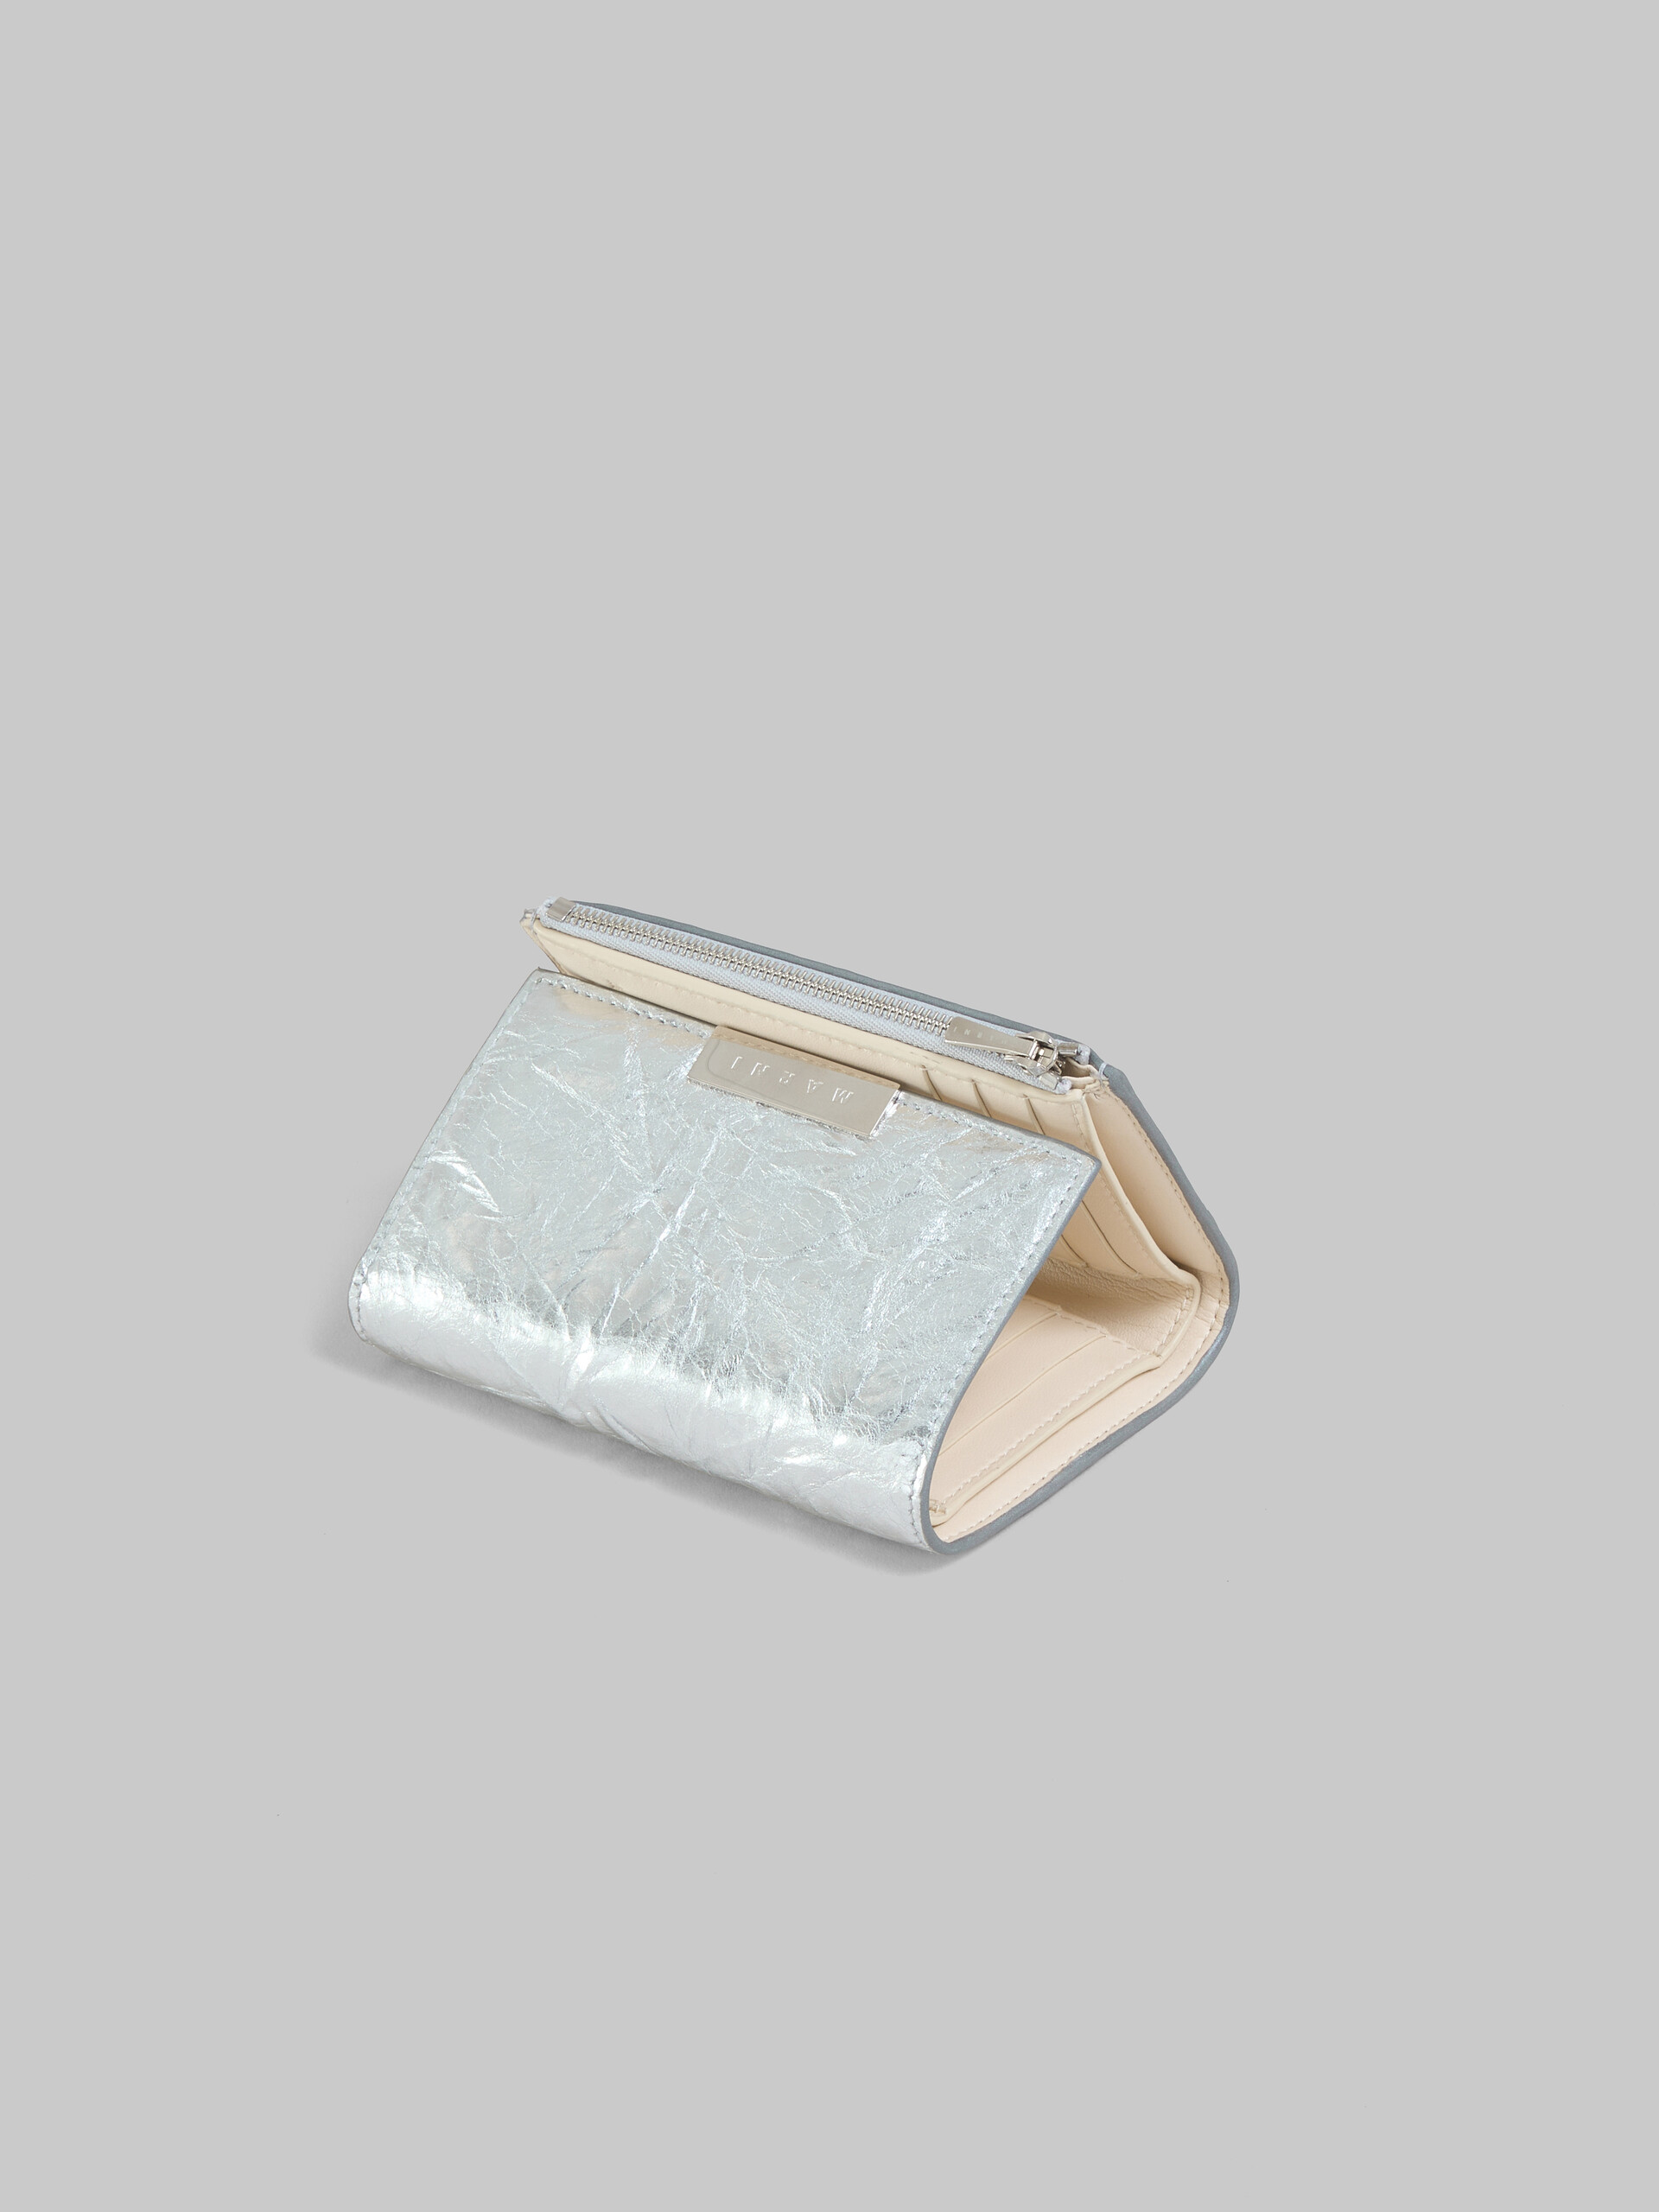 Dreifache Faltbrieftasche Prisma aus Leder in Silber - Brieftaschen - Image 4